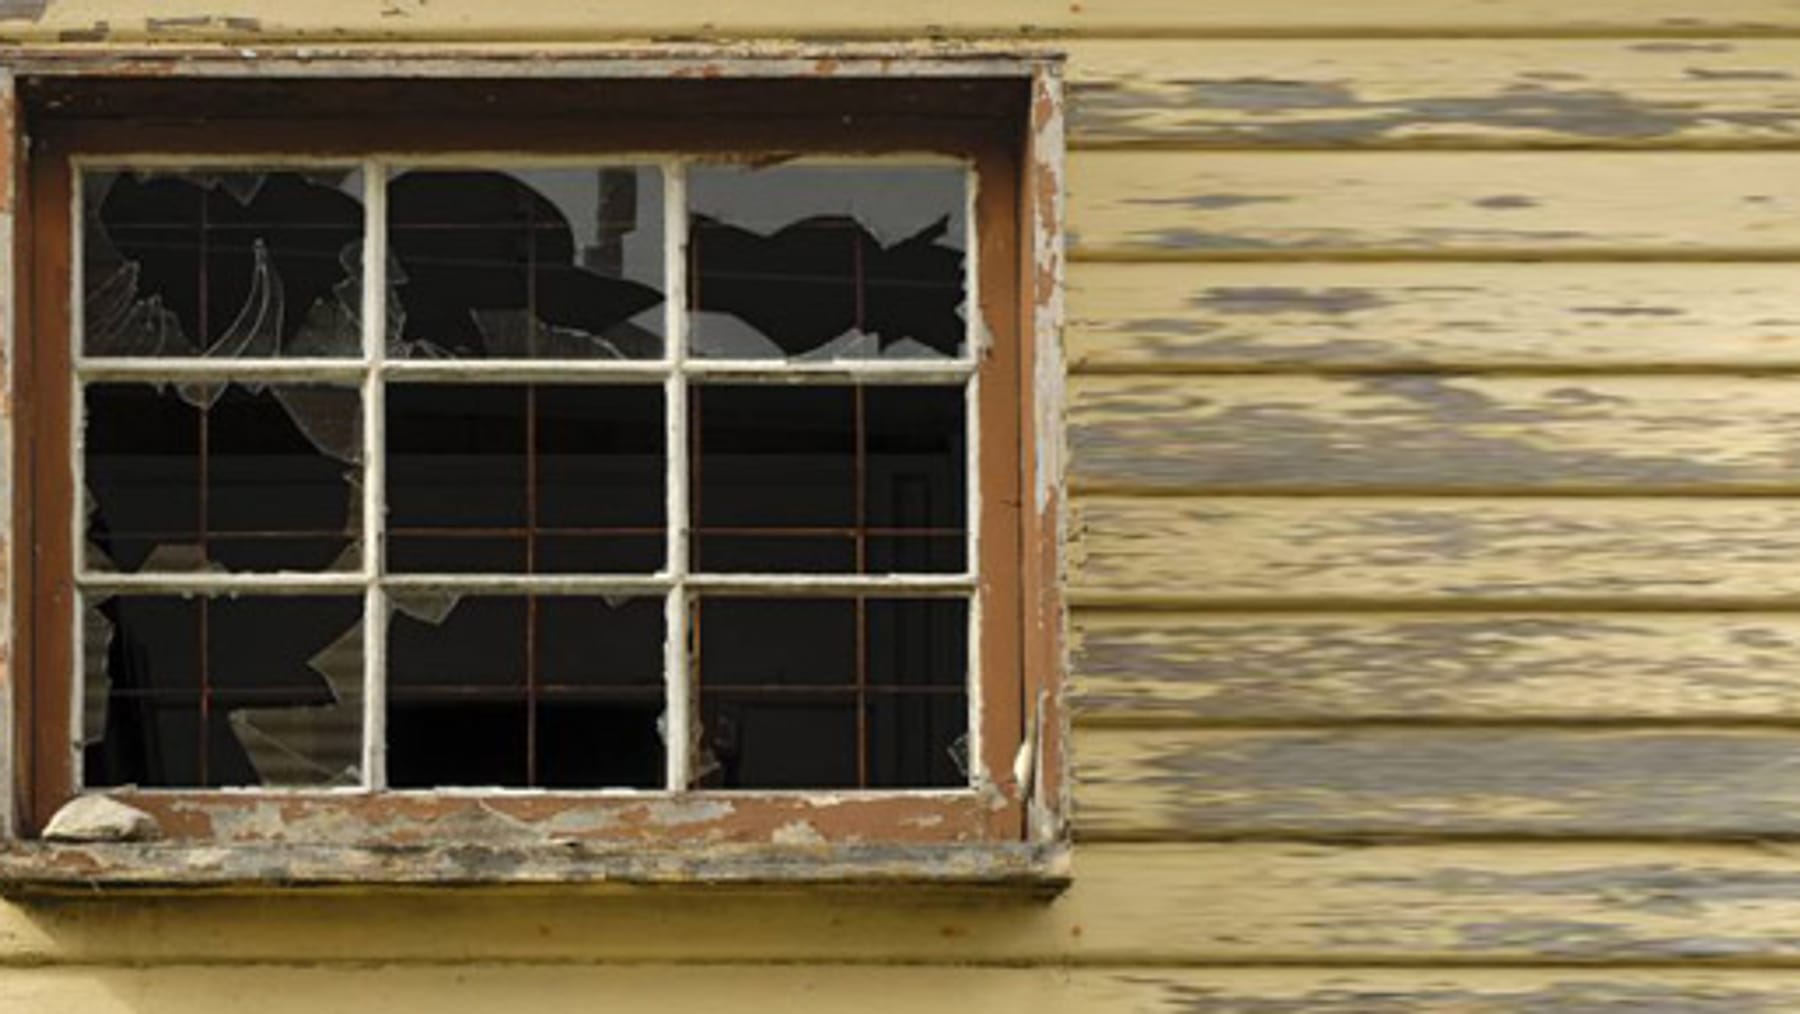 Fenster undicht, was tun? – 5 einfache Lösungen